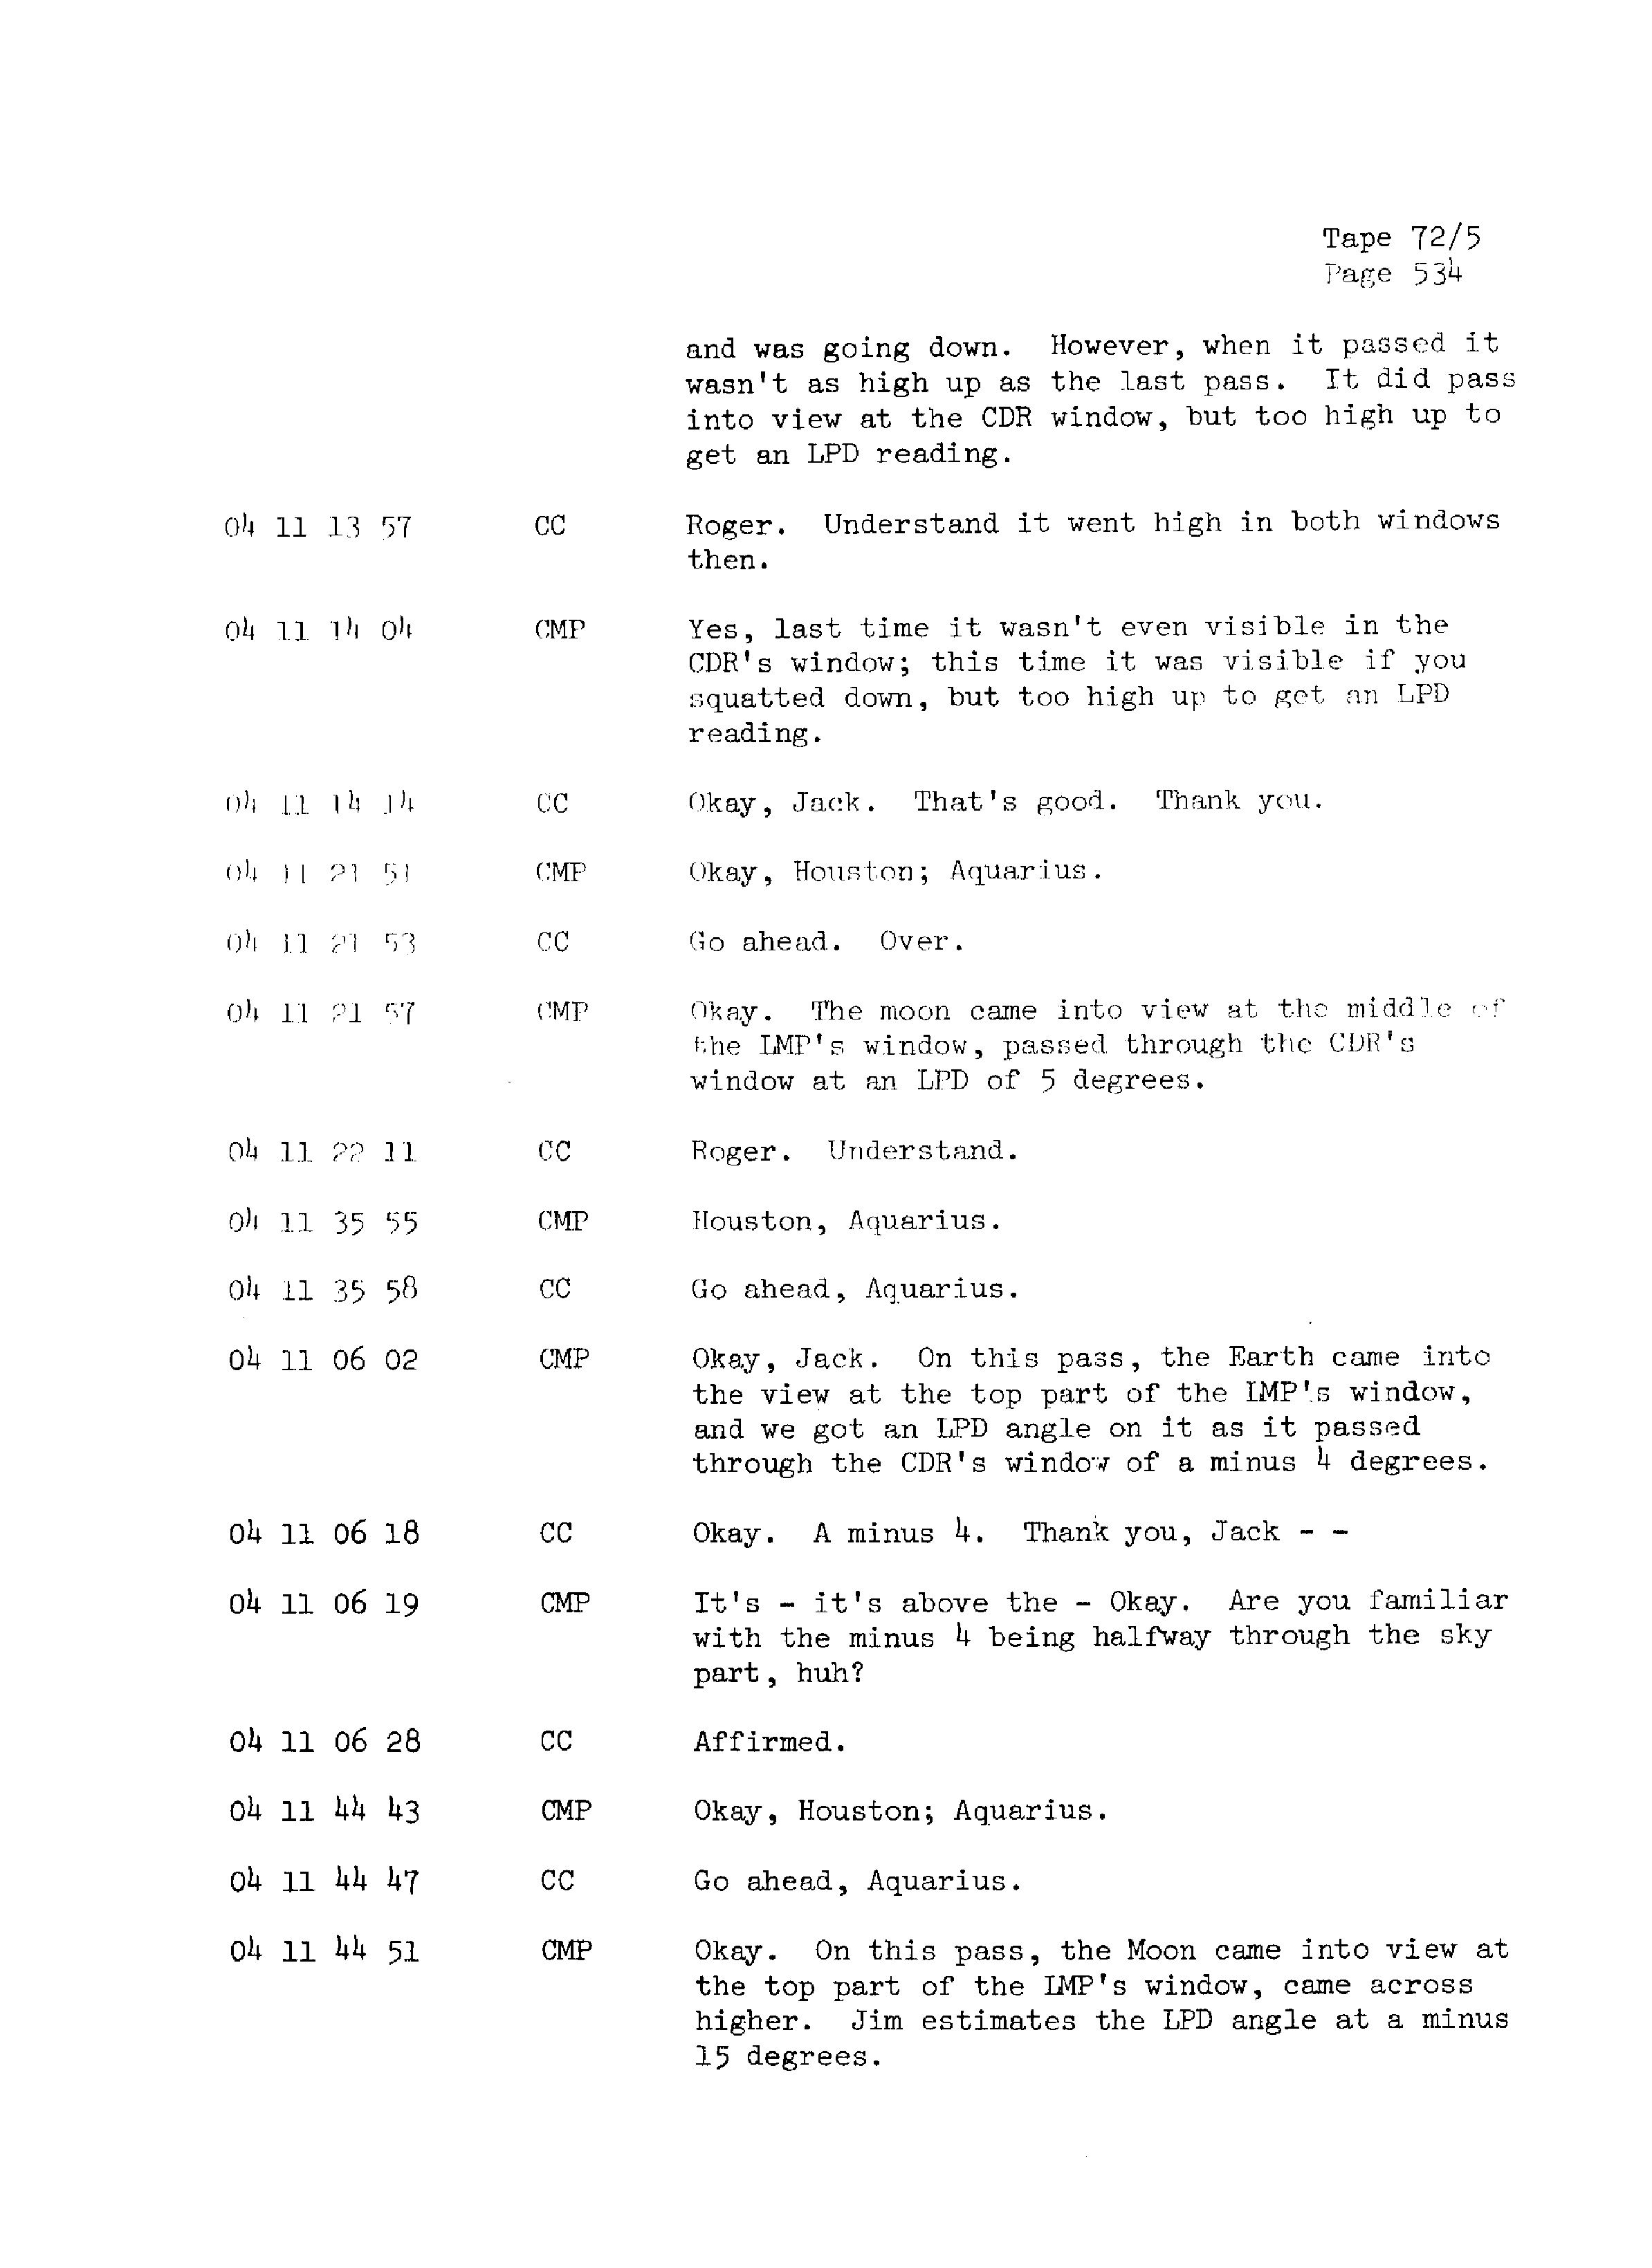 Page 541 of Apollo 13’s original transcript